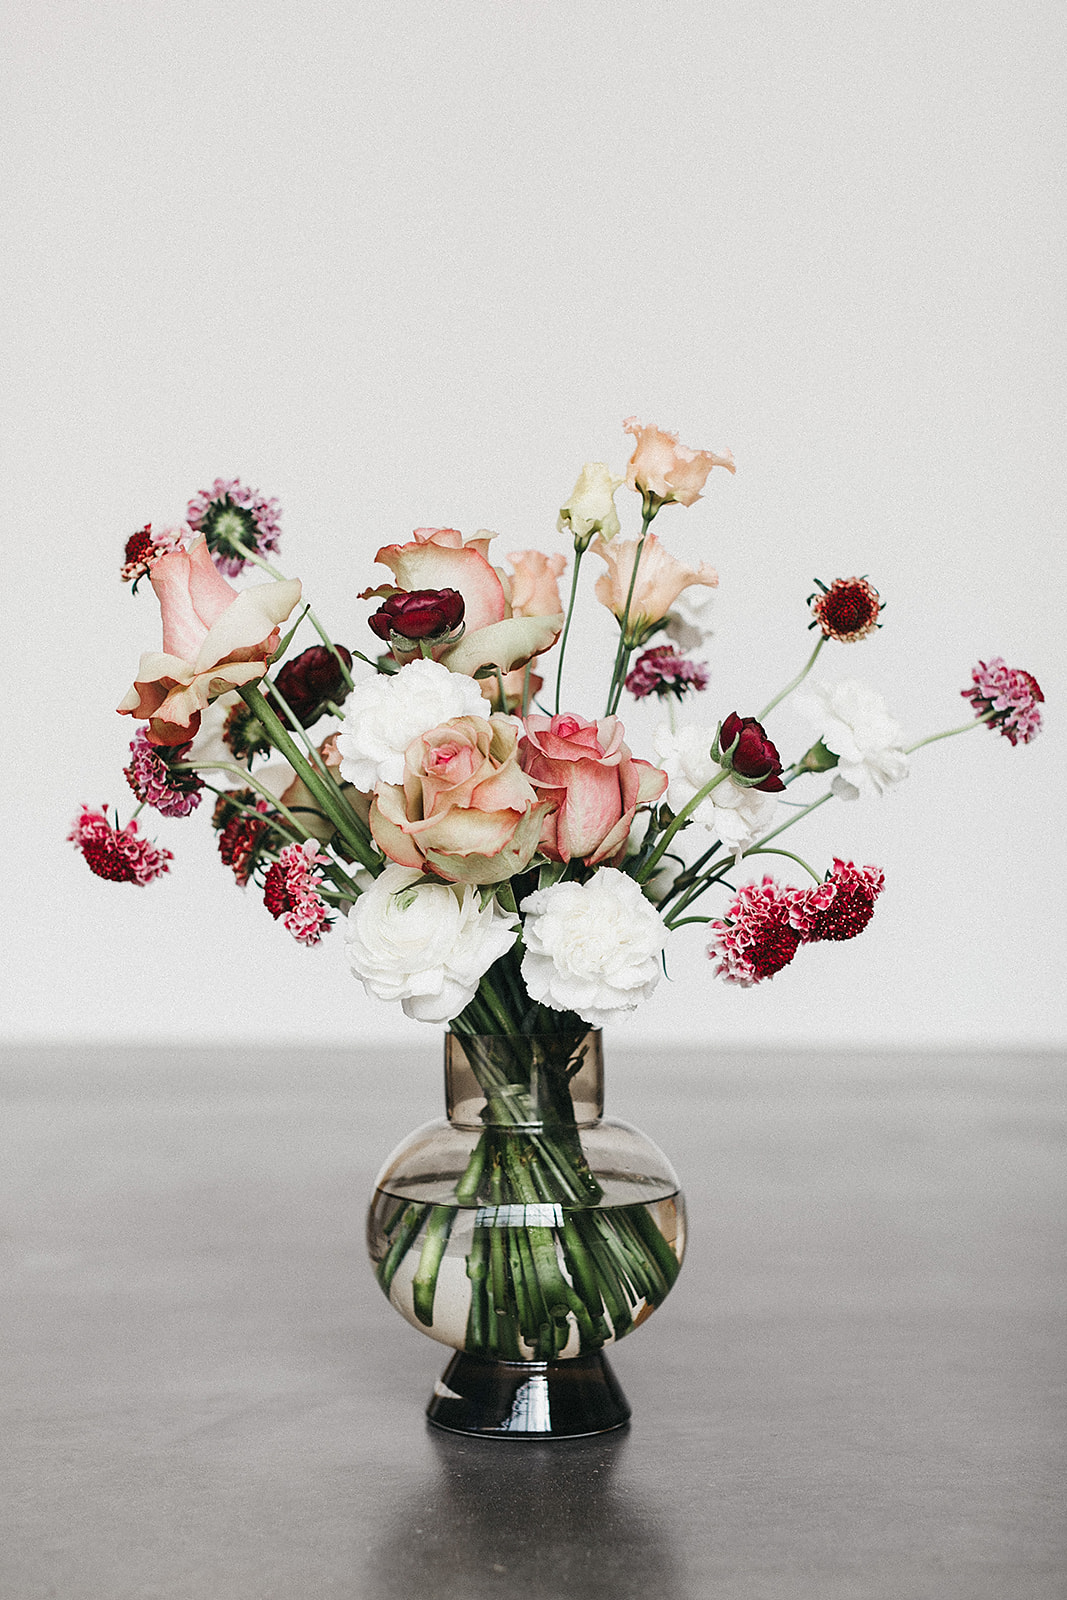 Vase 1 – GOLDREGEN floraldesign